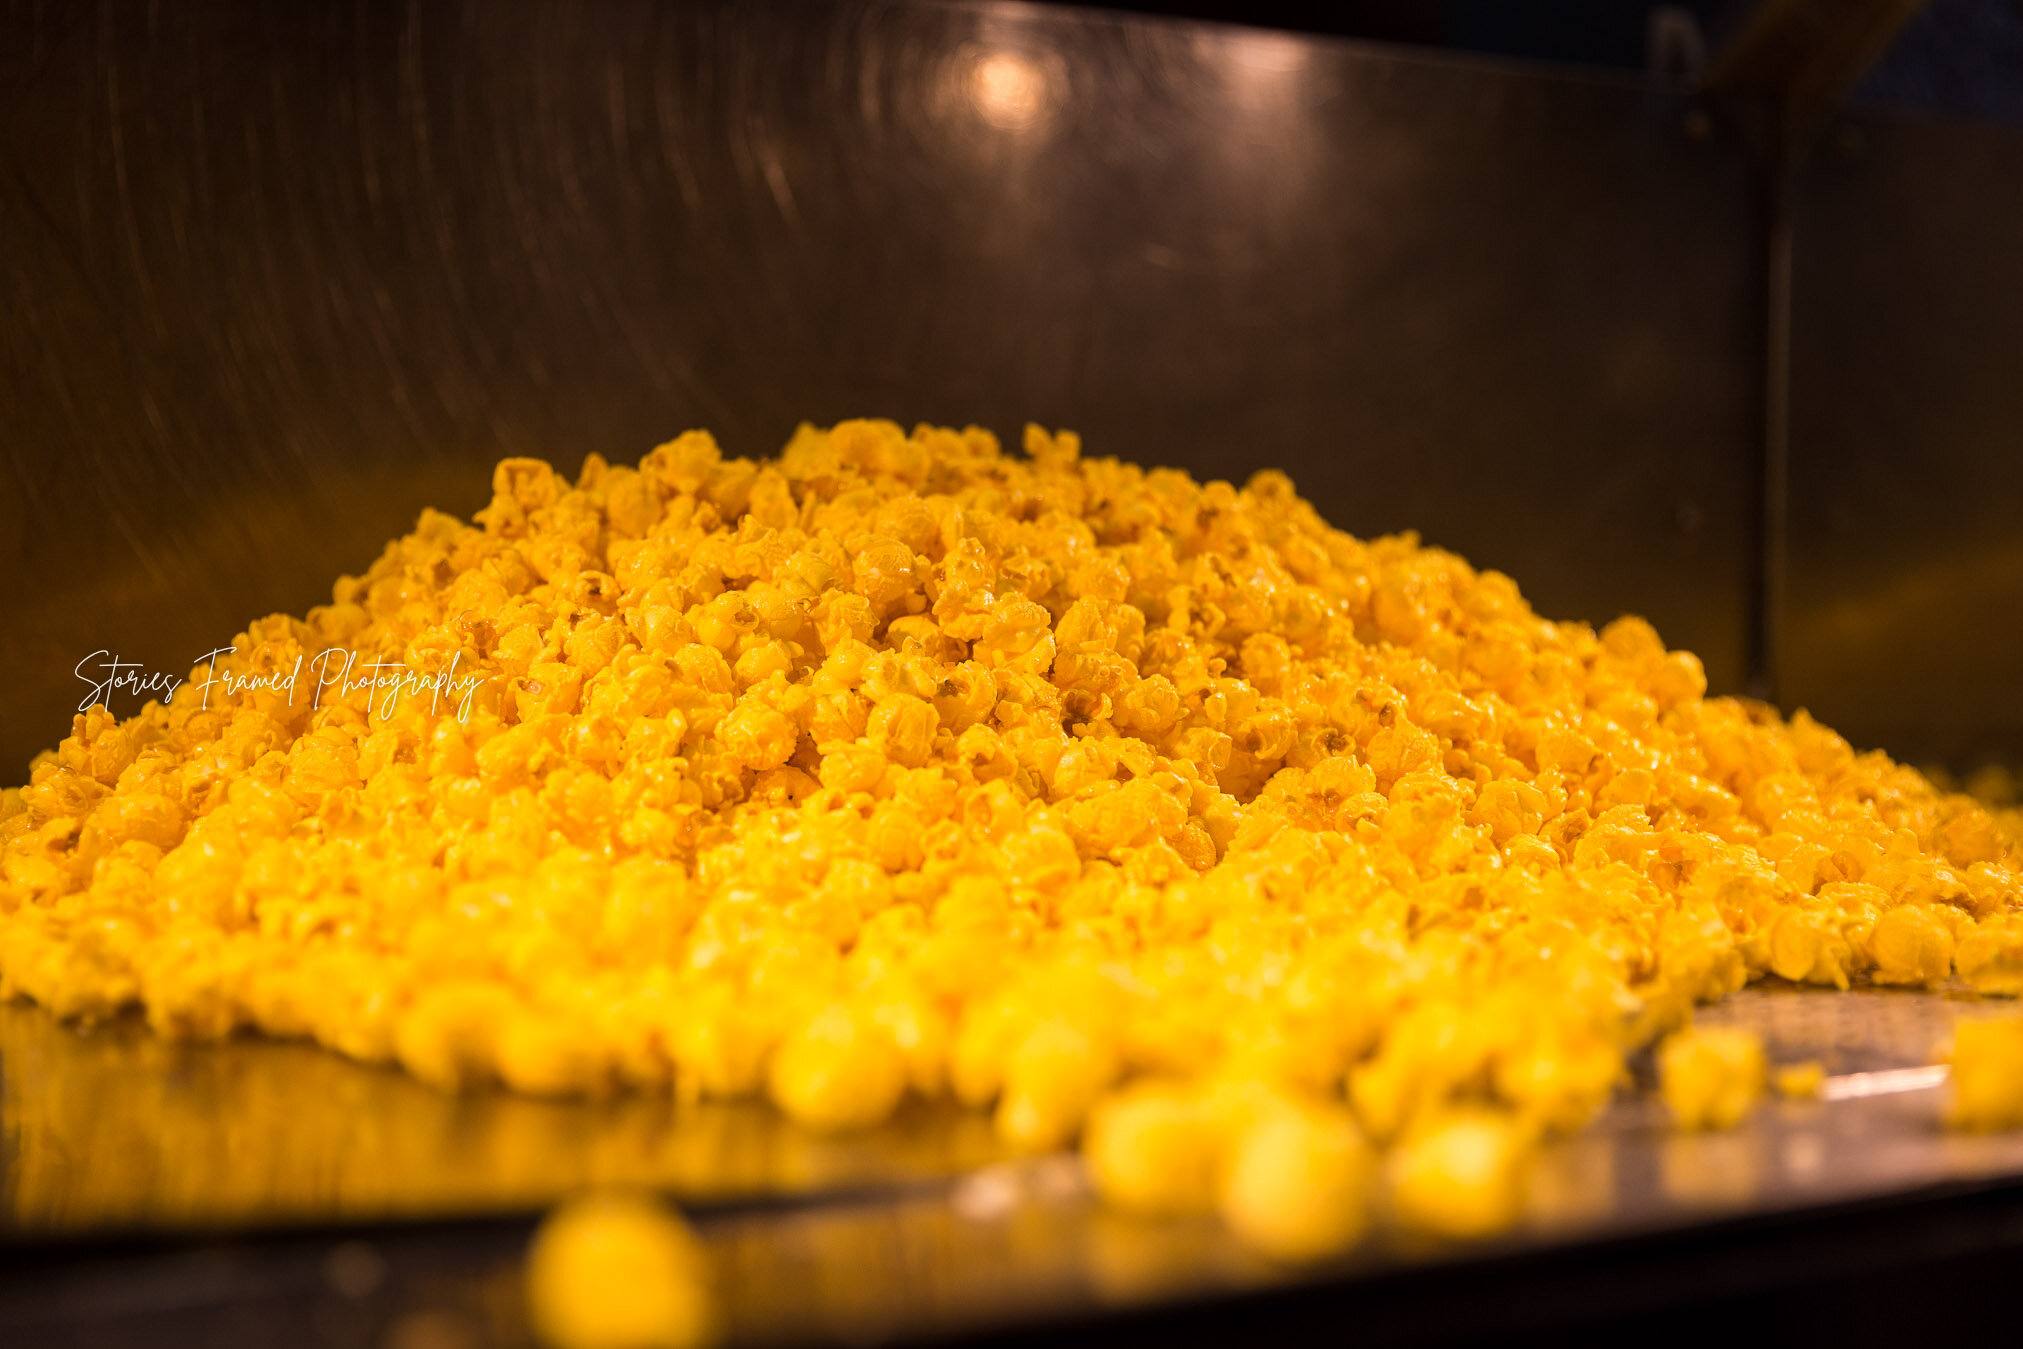 20-31-days-of-joy-yellow-Garretts-cheese-popcorn.jpg